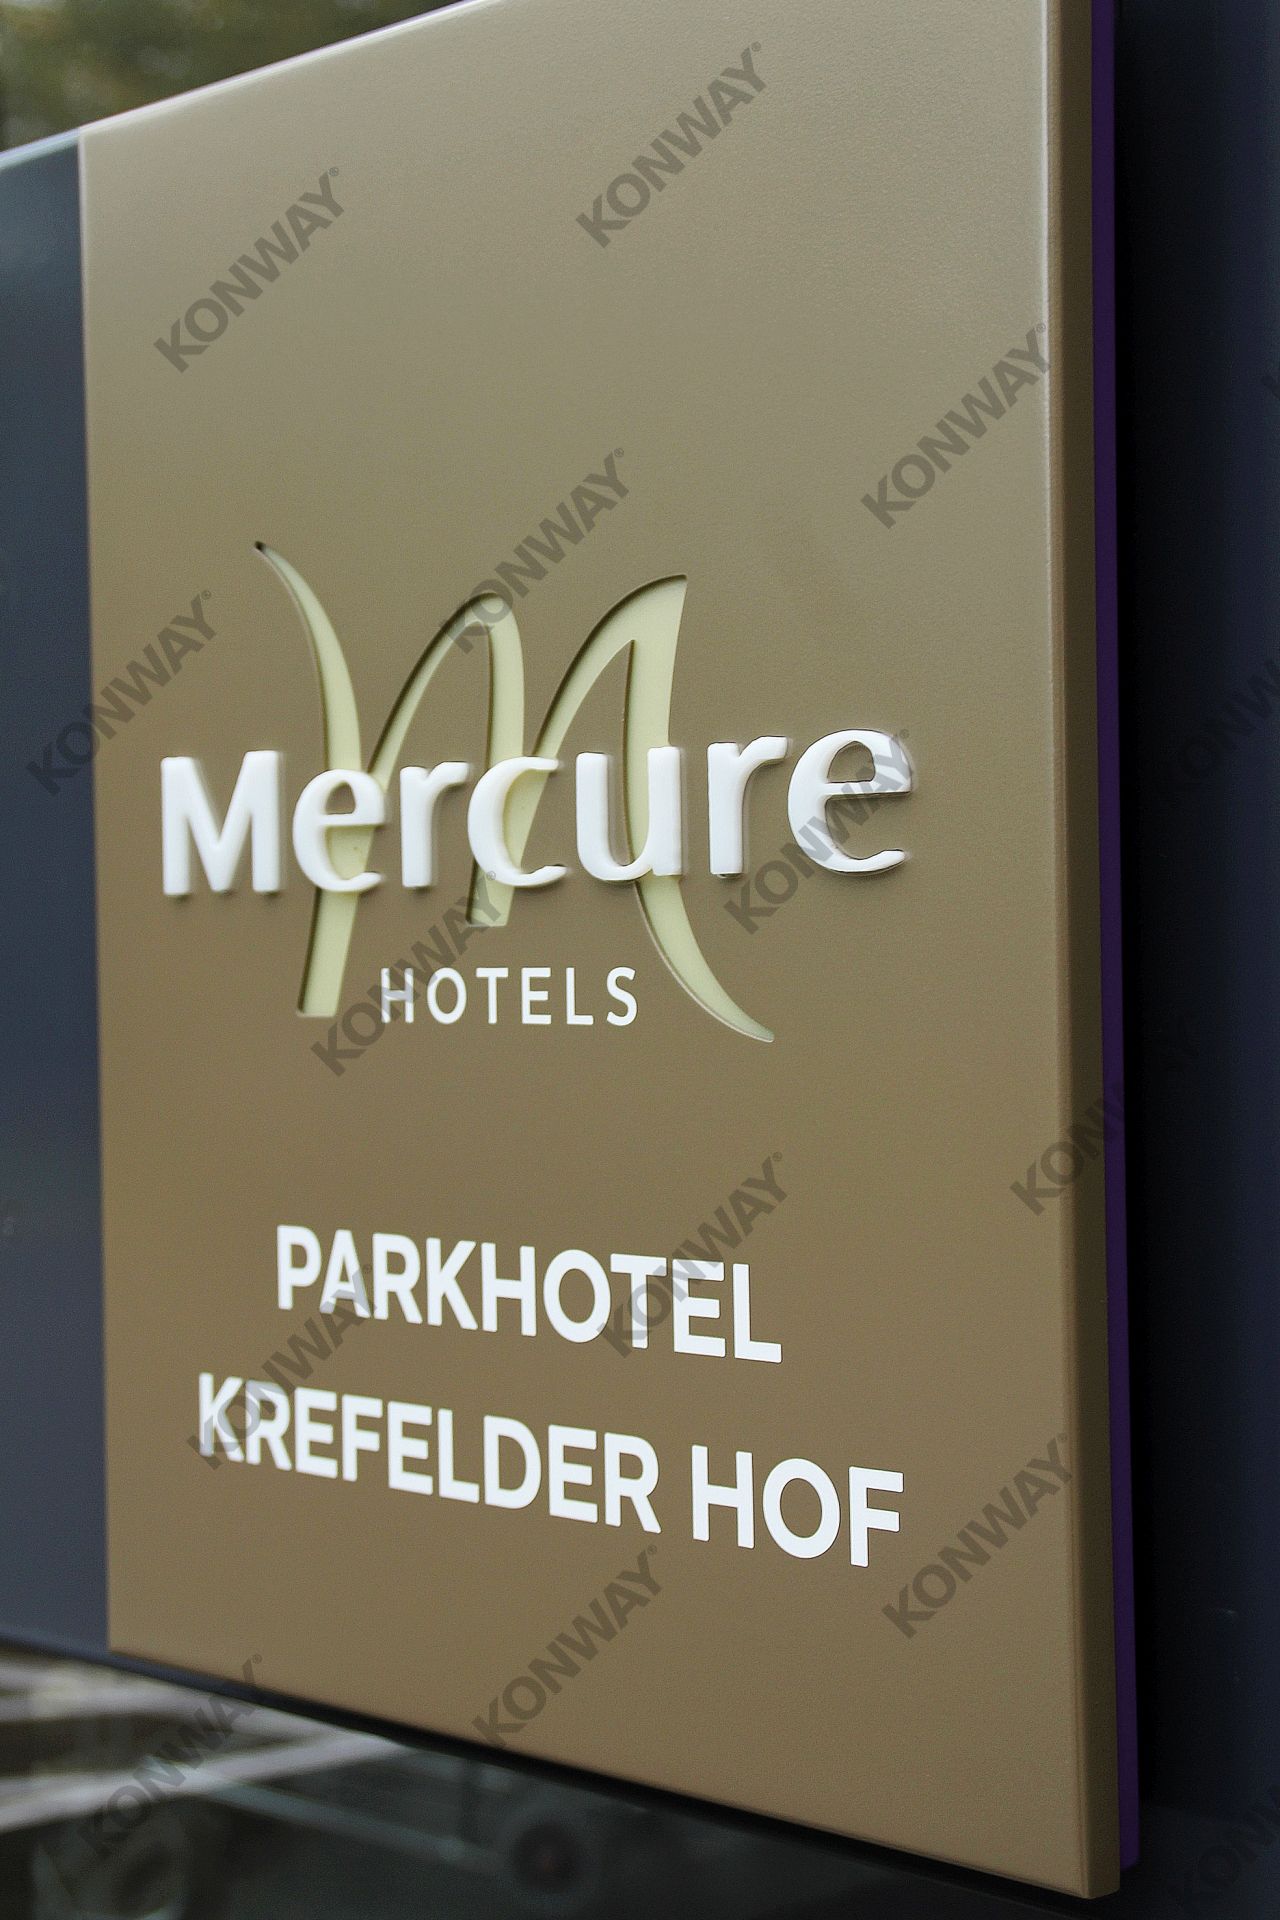 Mercure Parkhotel Krefelder Hof